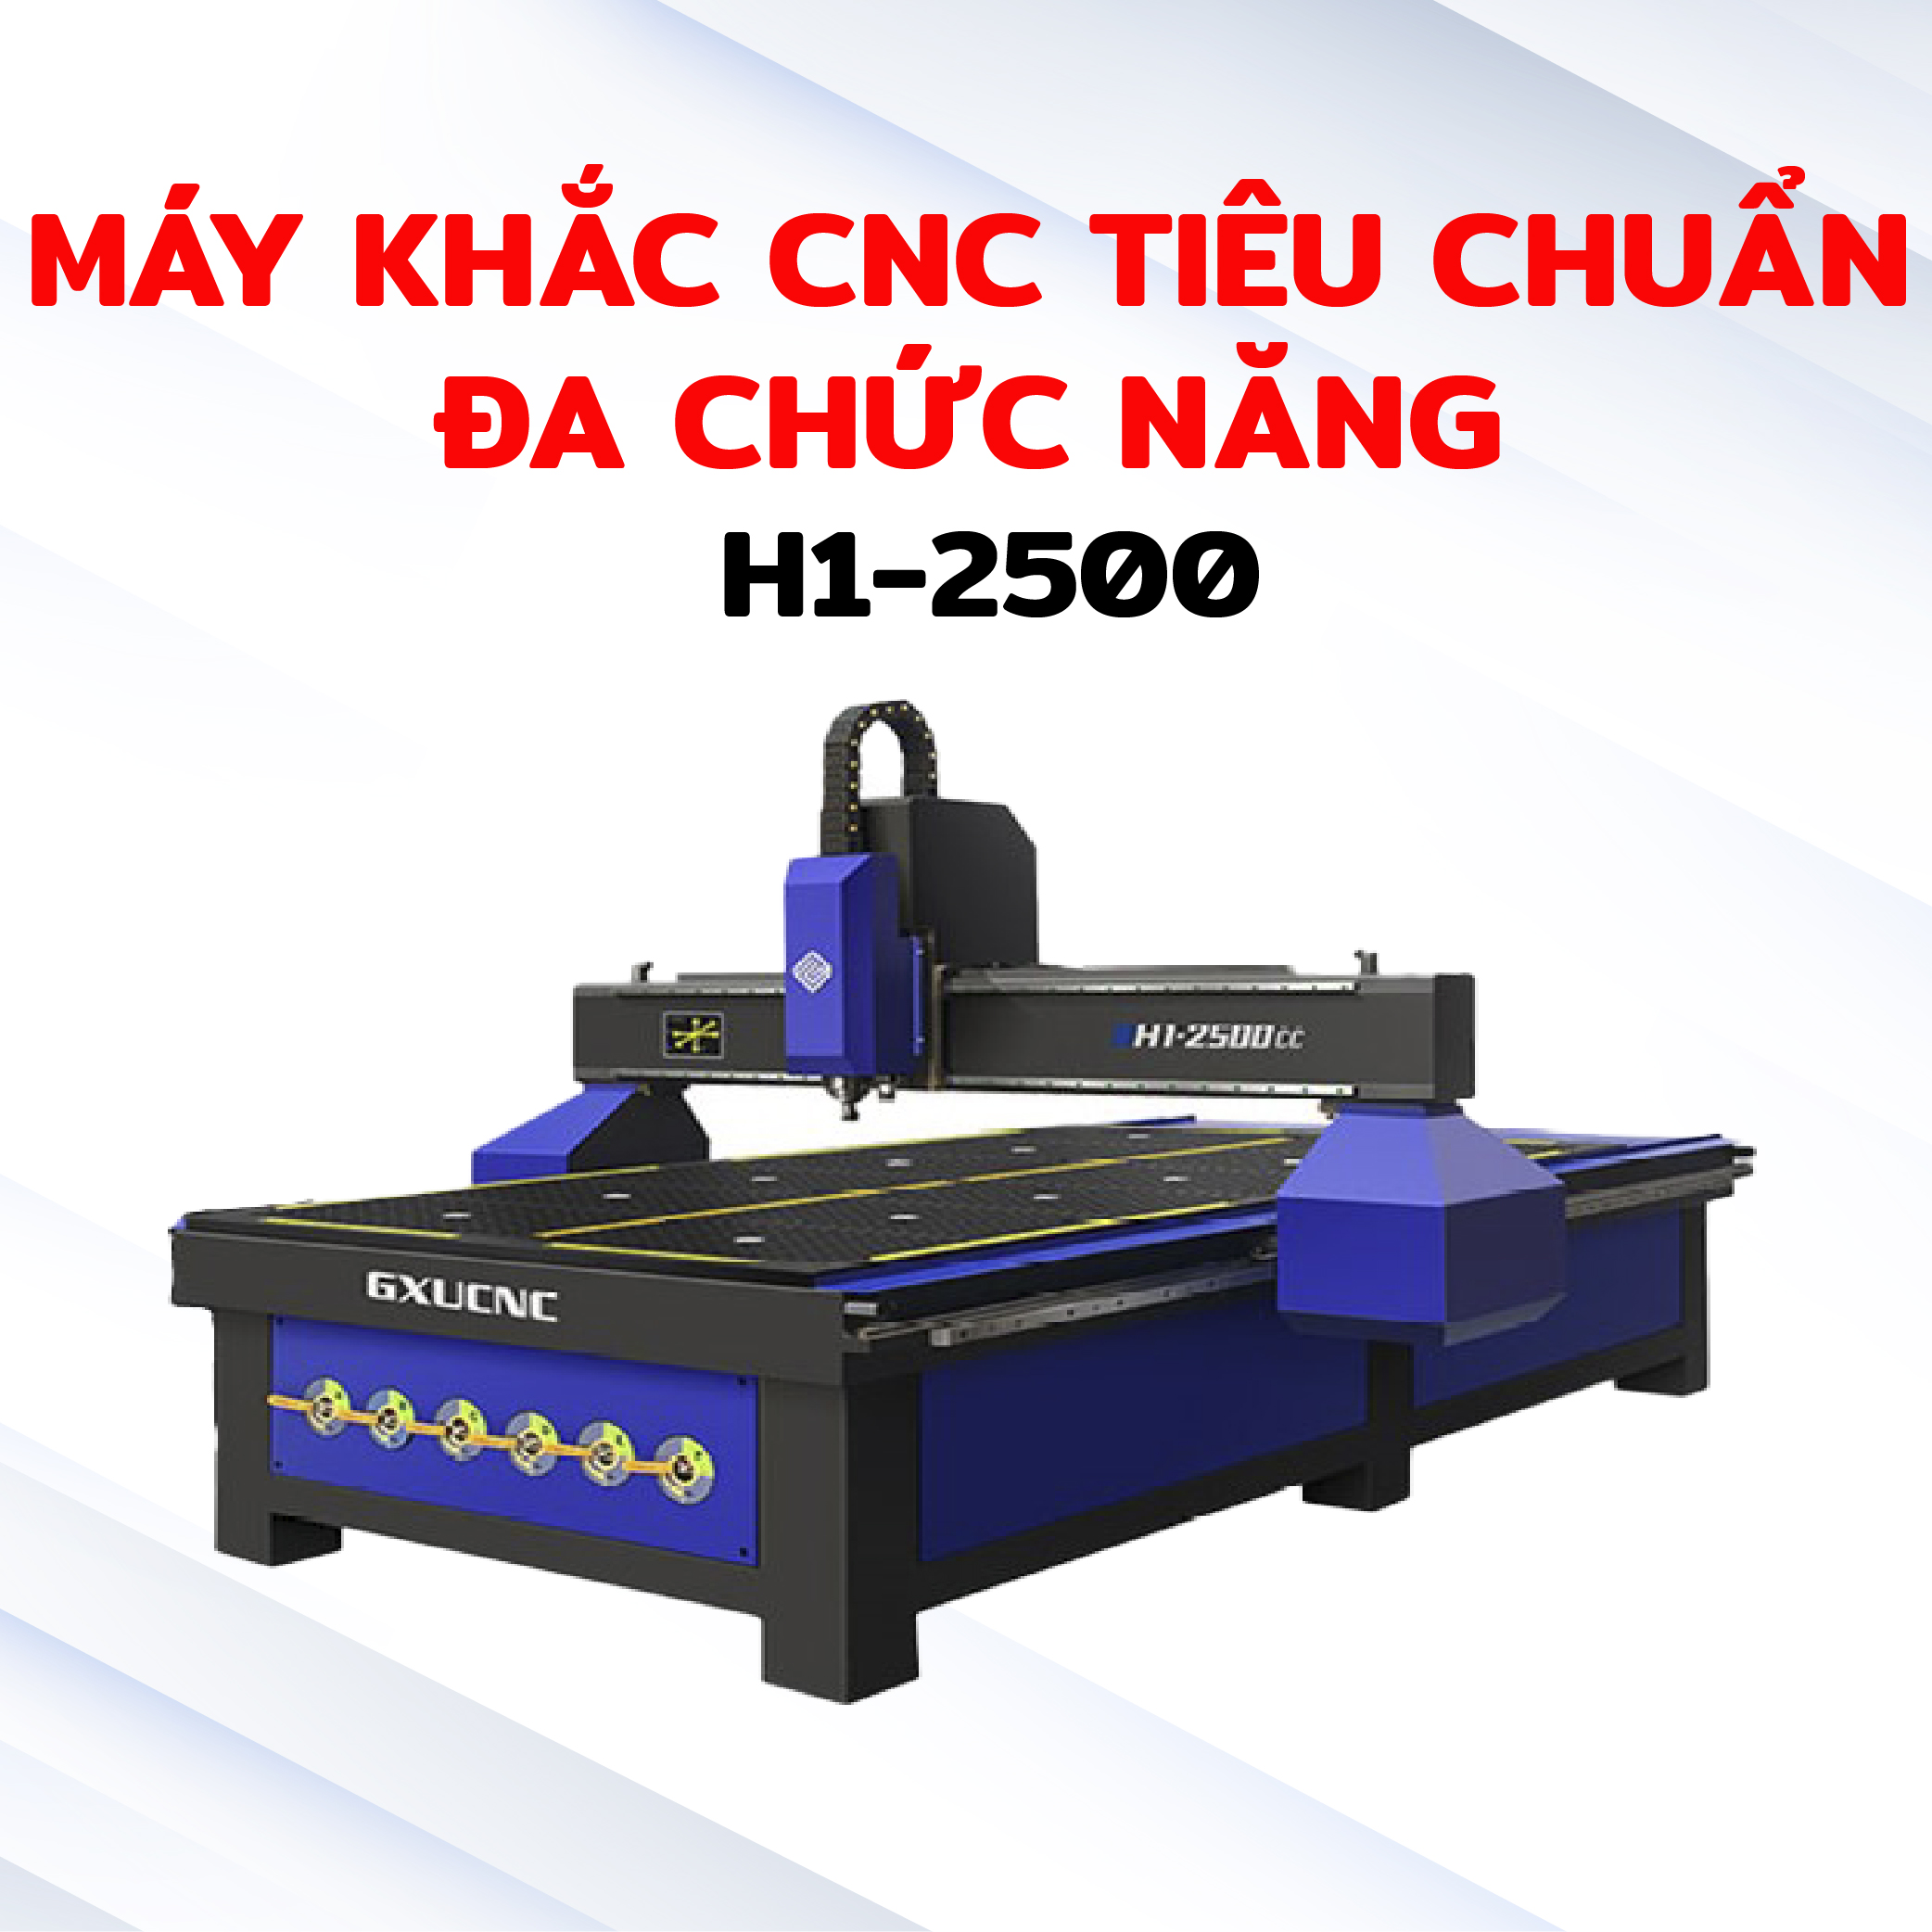 Máy khắc CNC  tiêu chuẩn đa chức năng H1-2500